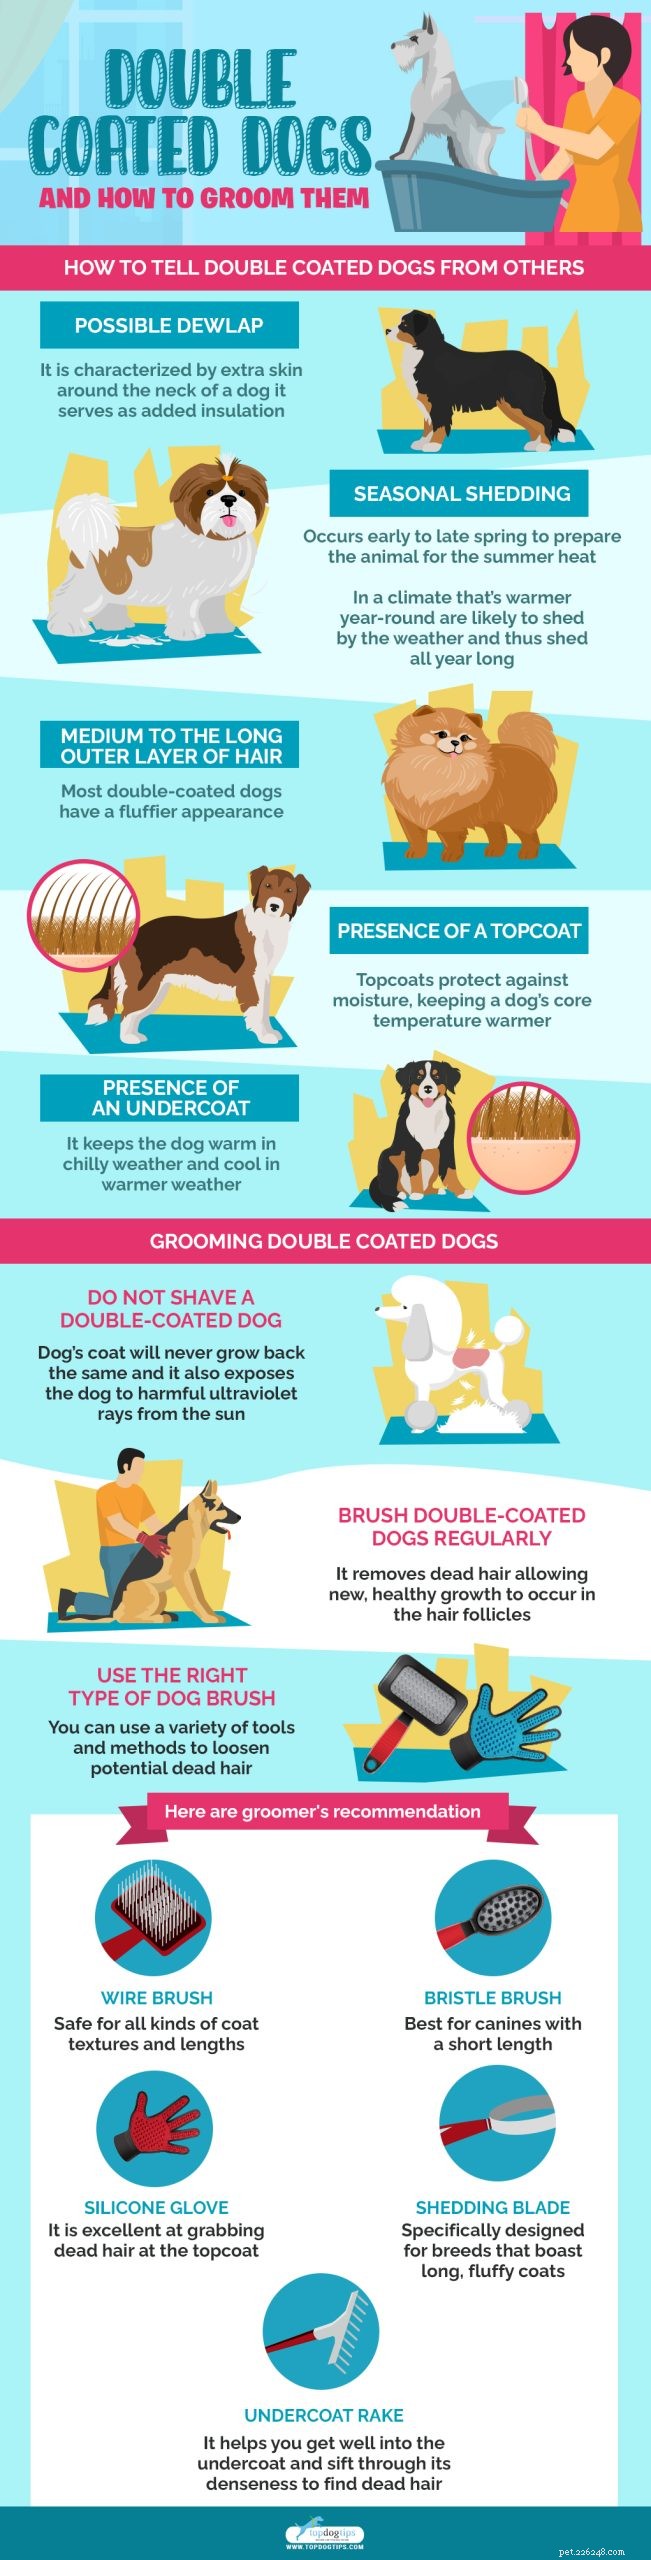 Dubbelbelagda hundar och hur man sköter dem